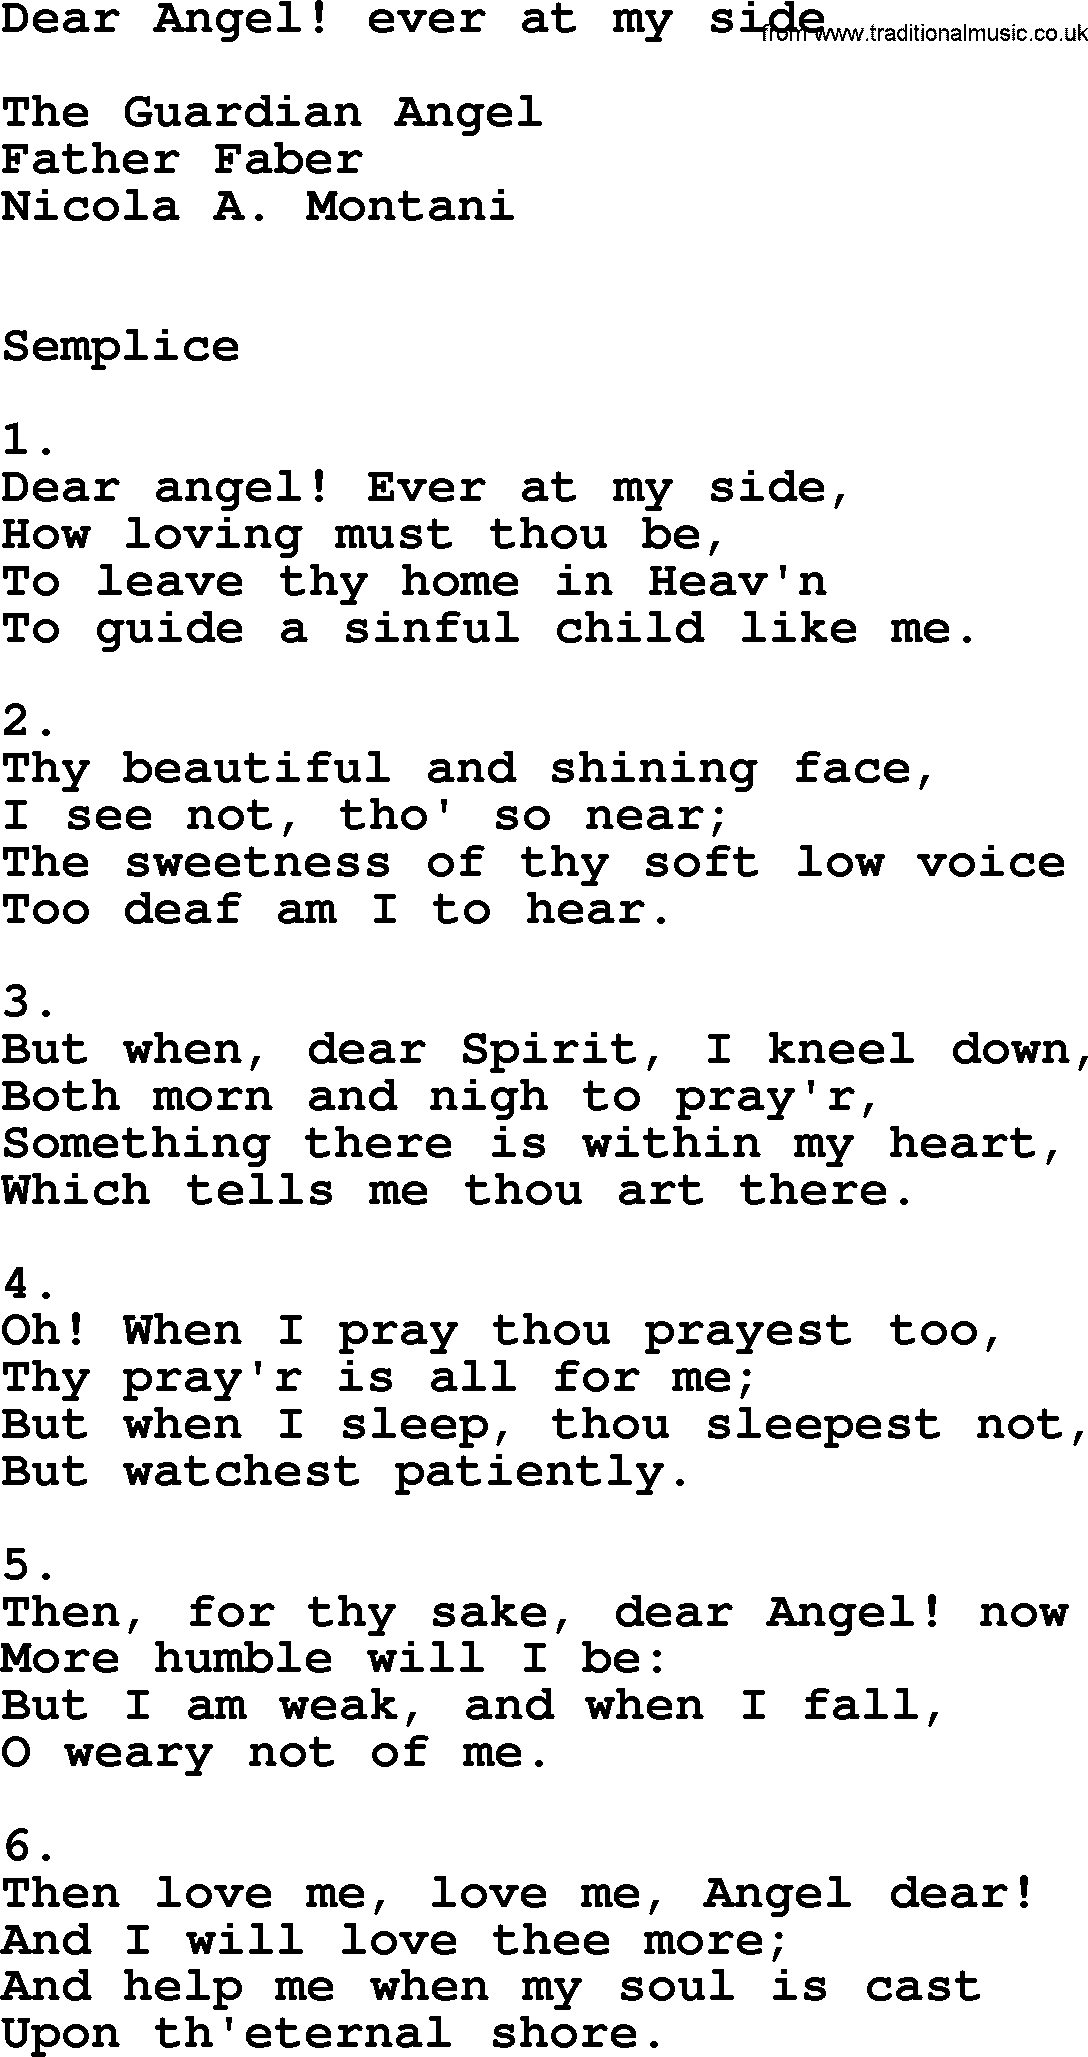 Catholic Hymn: Dear Angel! Ever At My Side lyrics with PDF